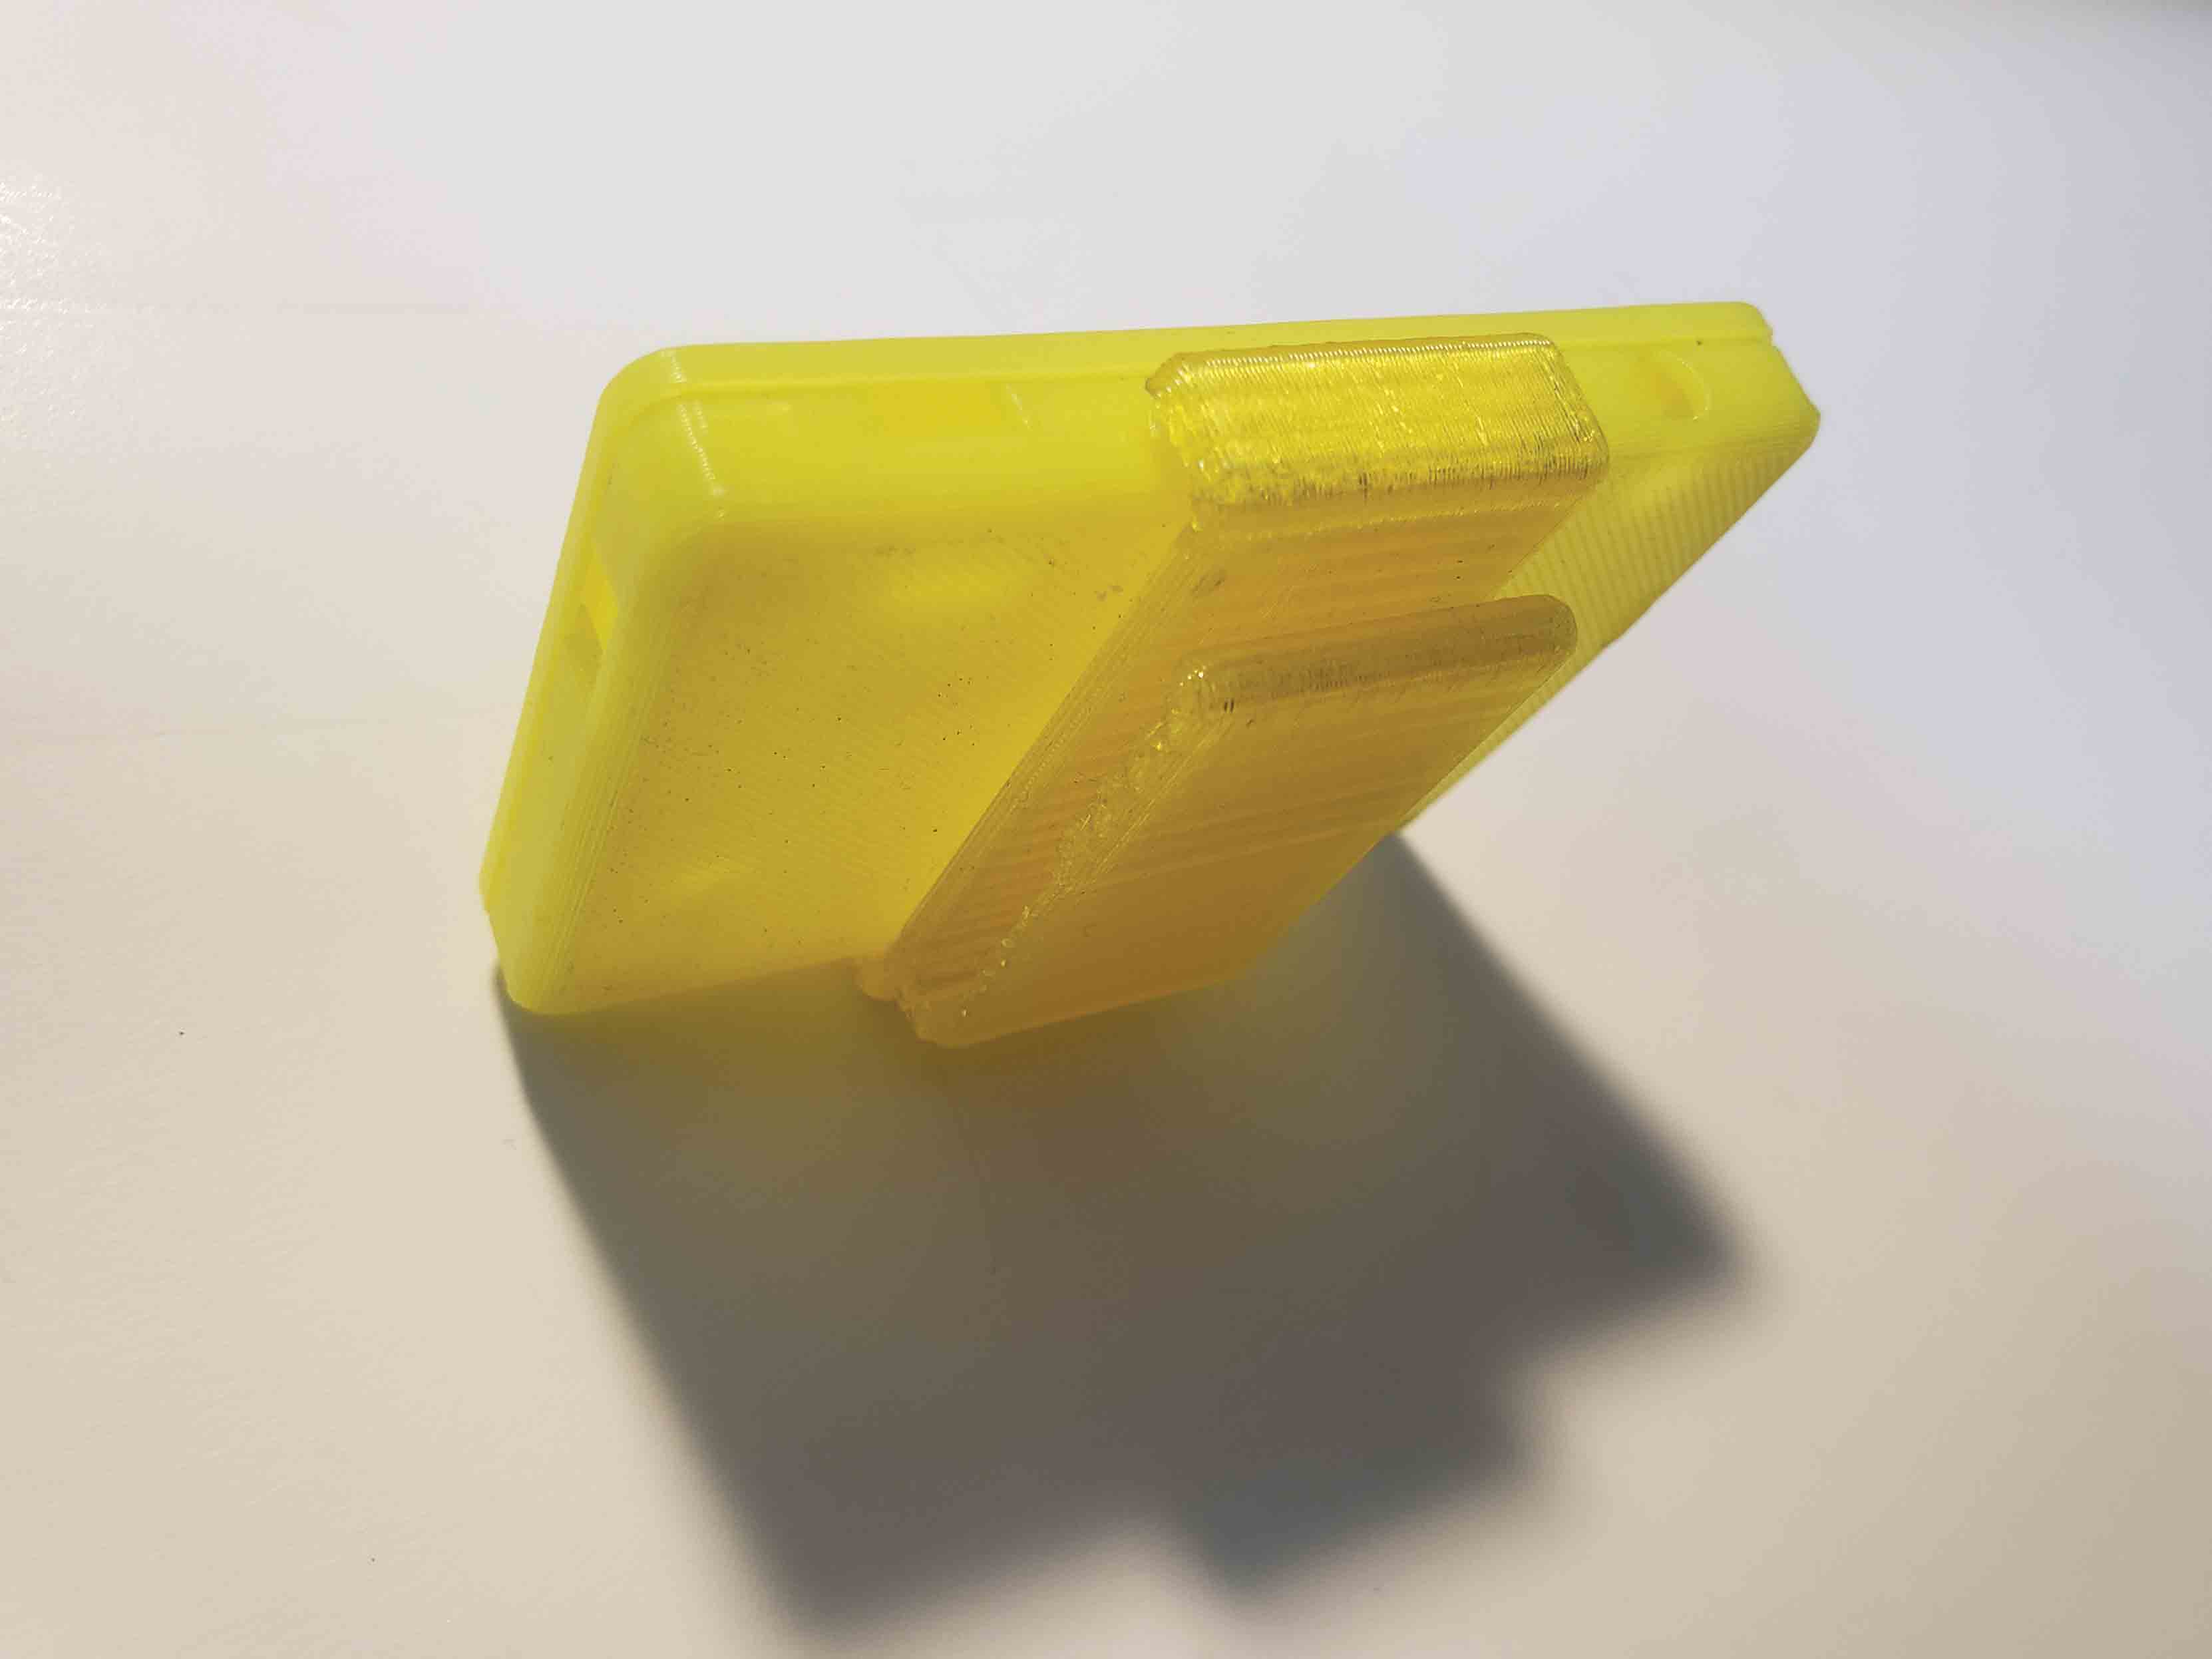 Prototype-ECG-Housings-Yellow-Clip-Topview-v1.2